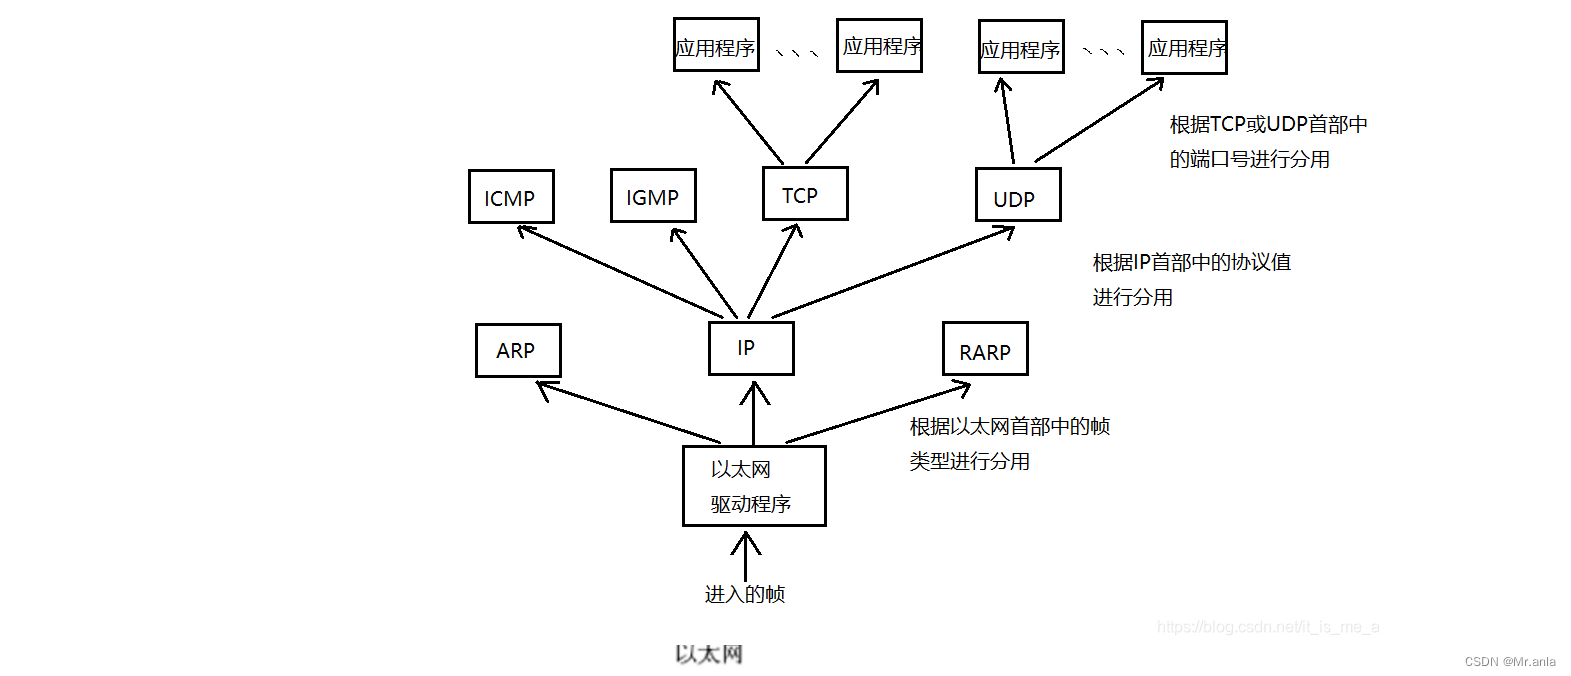 网络 (基础概念, OSI 七层模型, TCP/IP 五层模型)